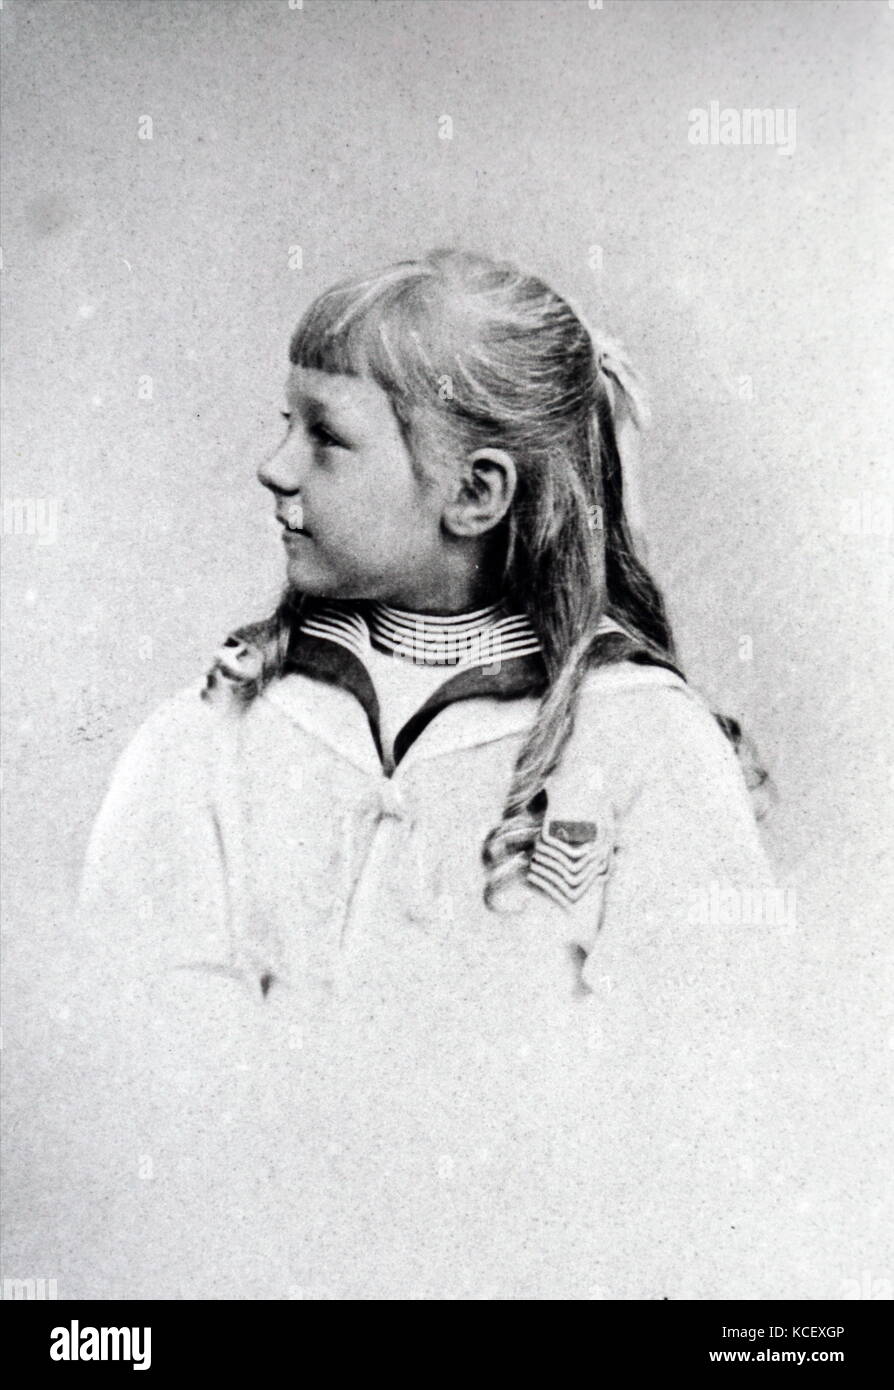 Fotografía de la princesa Victoria Luisa de Prusia (1892 - 1980), hija del emperador alemán Guillermo II y Augusta Victoria de Schleswig-Holstein. Fecha del siglo XIX Foto de stock